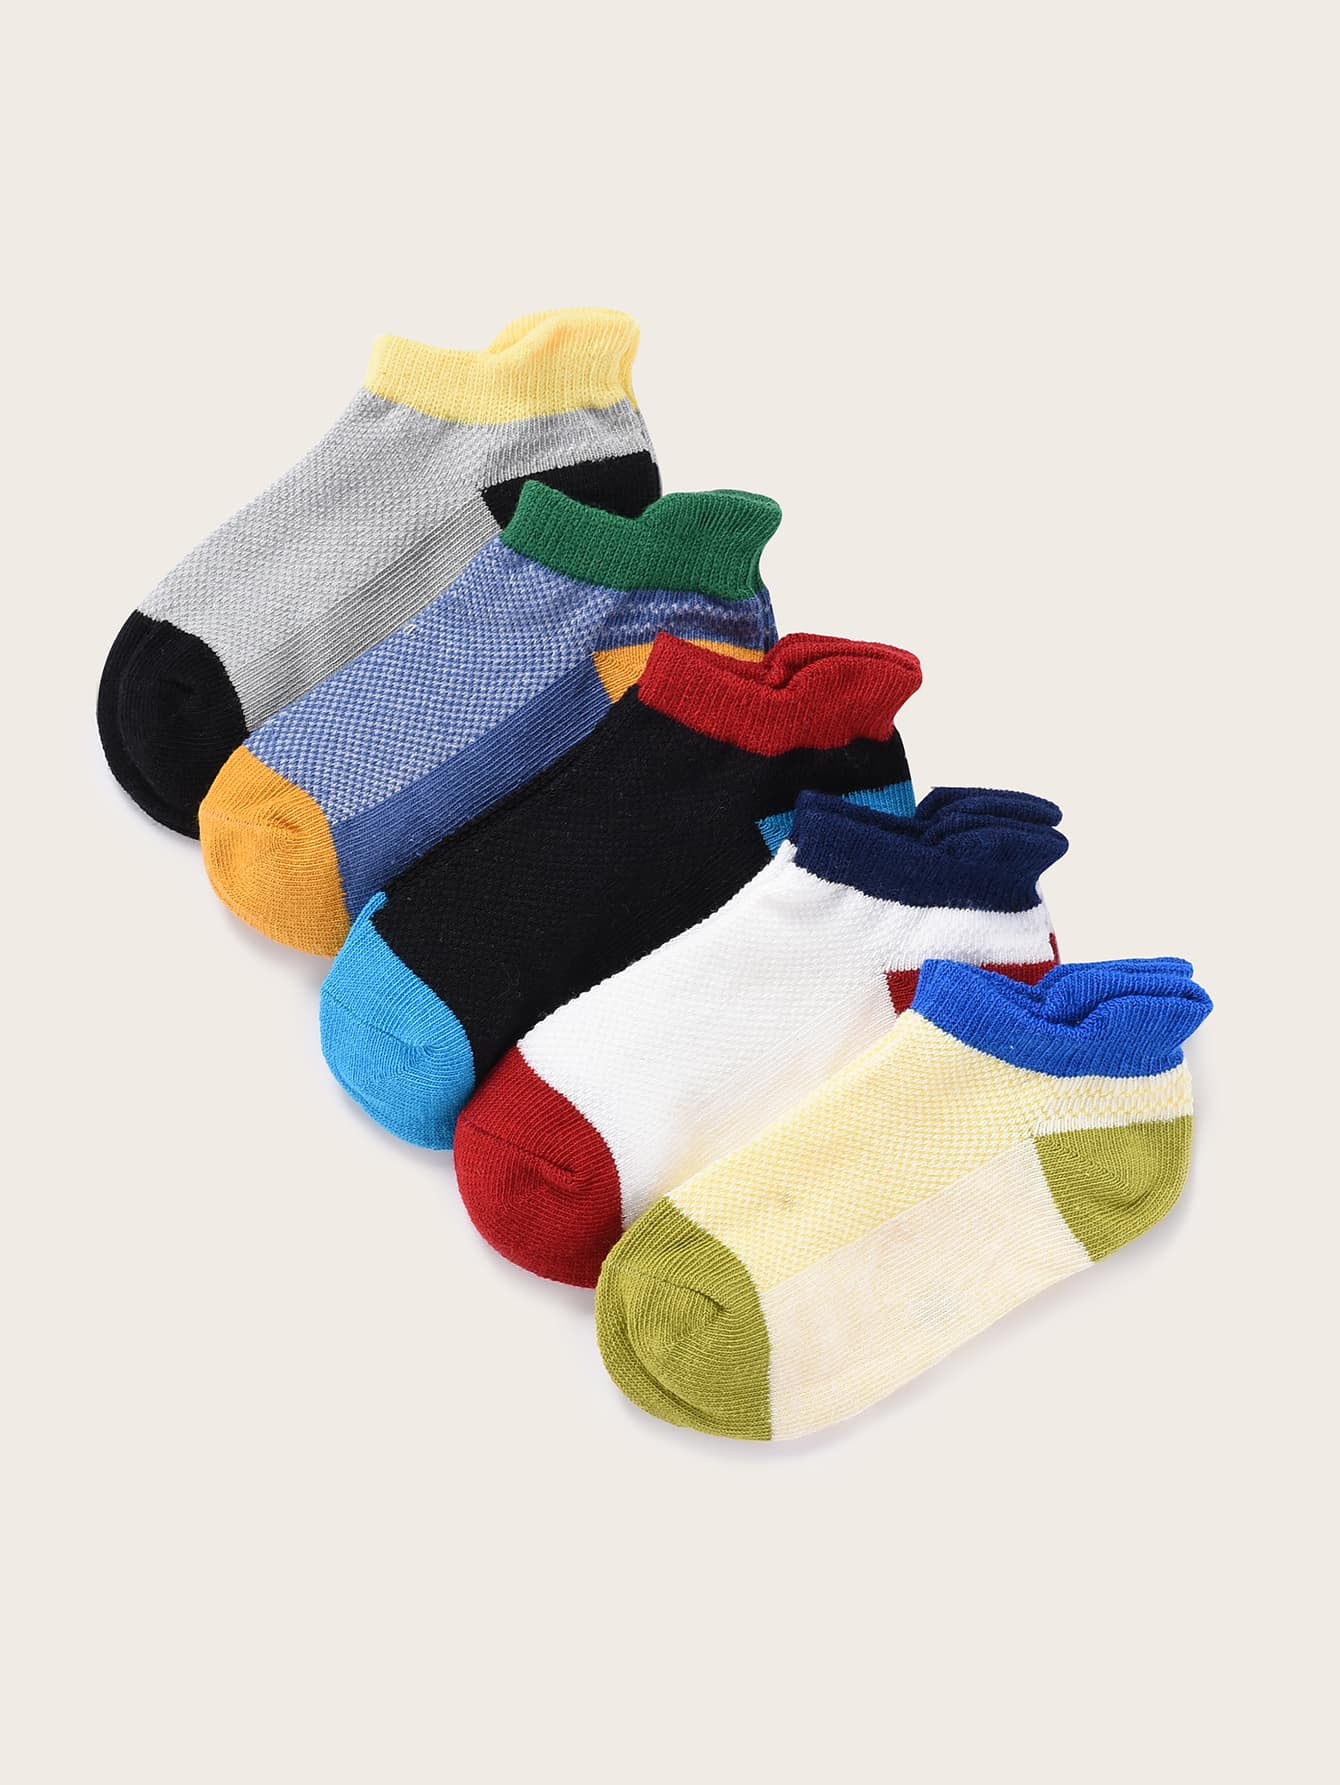 5pairs Toddler Boys Color Block Socks